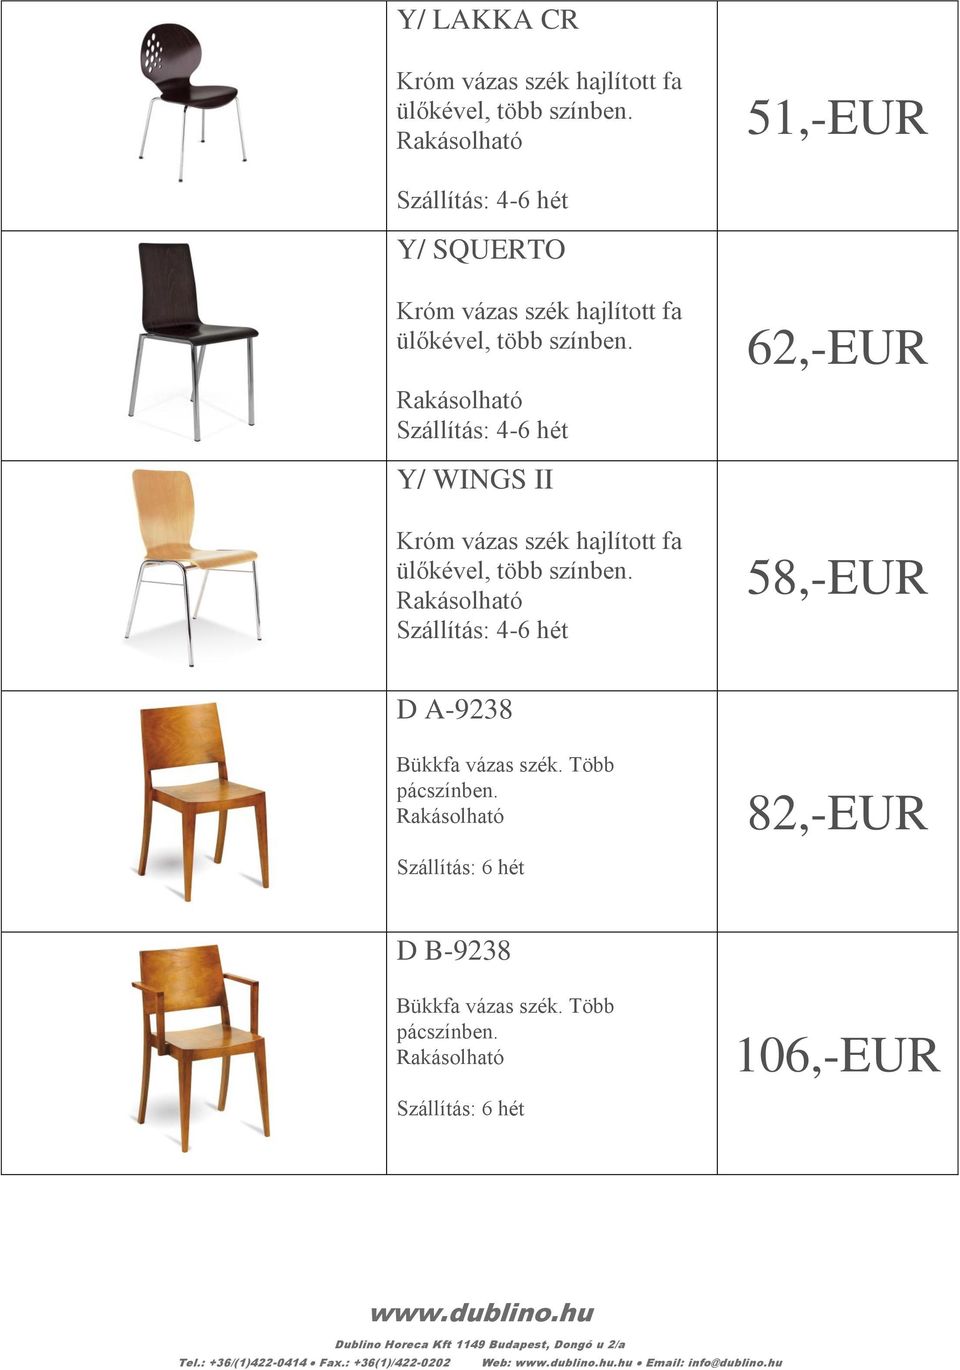 82,-EUR D B-9238 Bükkfa vázas szék. Több pácszínben.